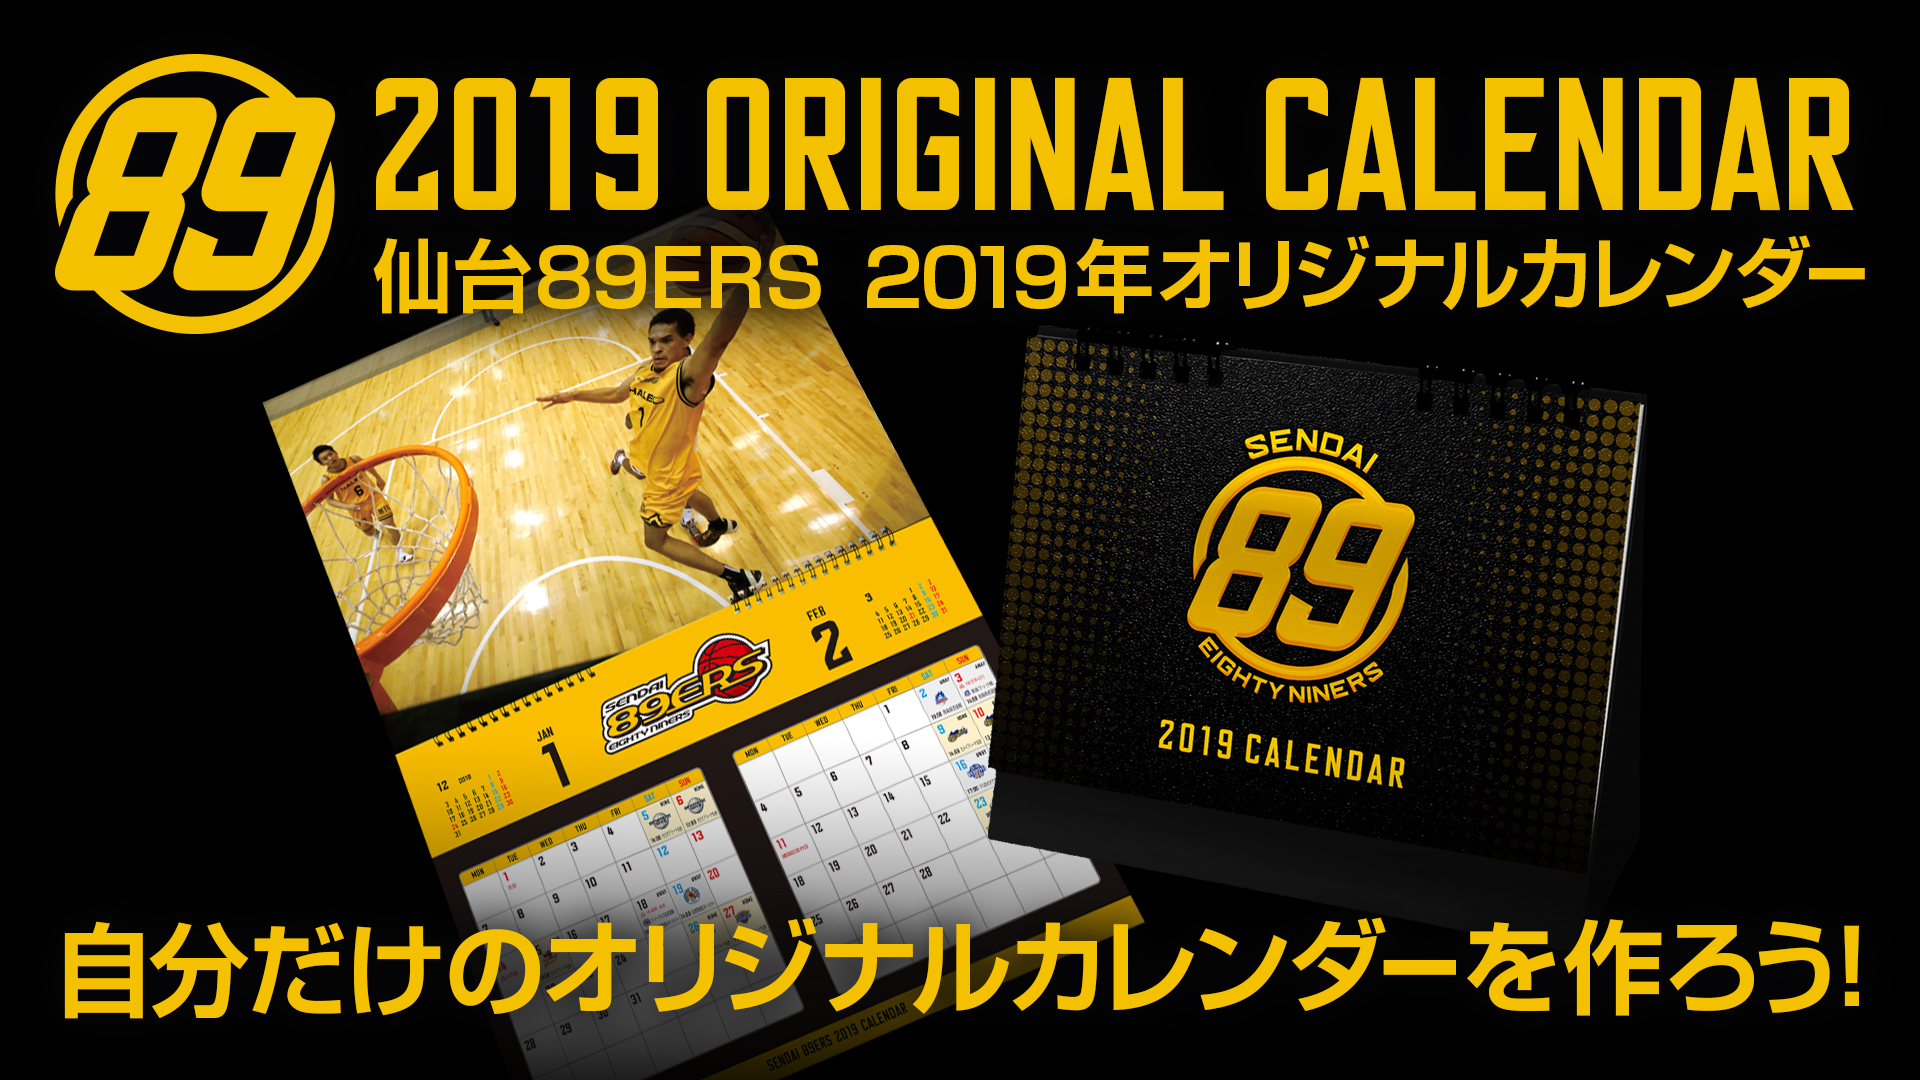 仙台89ers 2019年オリジナルカレンダー Web限定 完全受注生産発売 仙台89ers